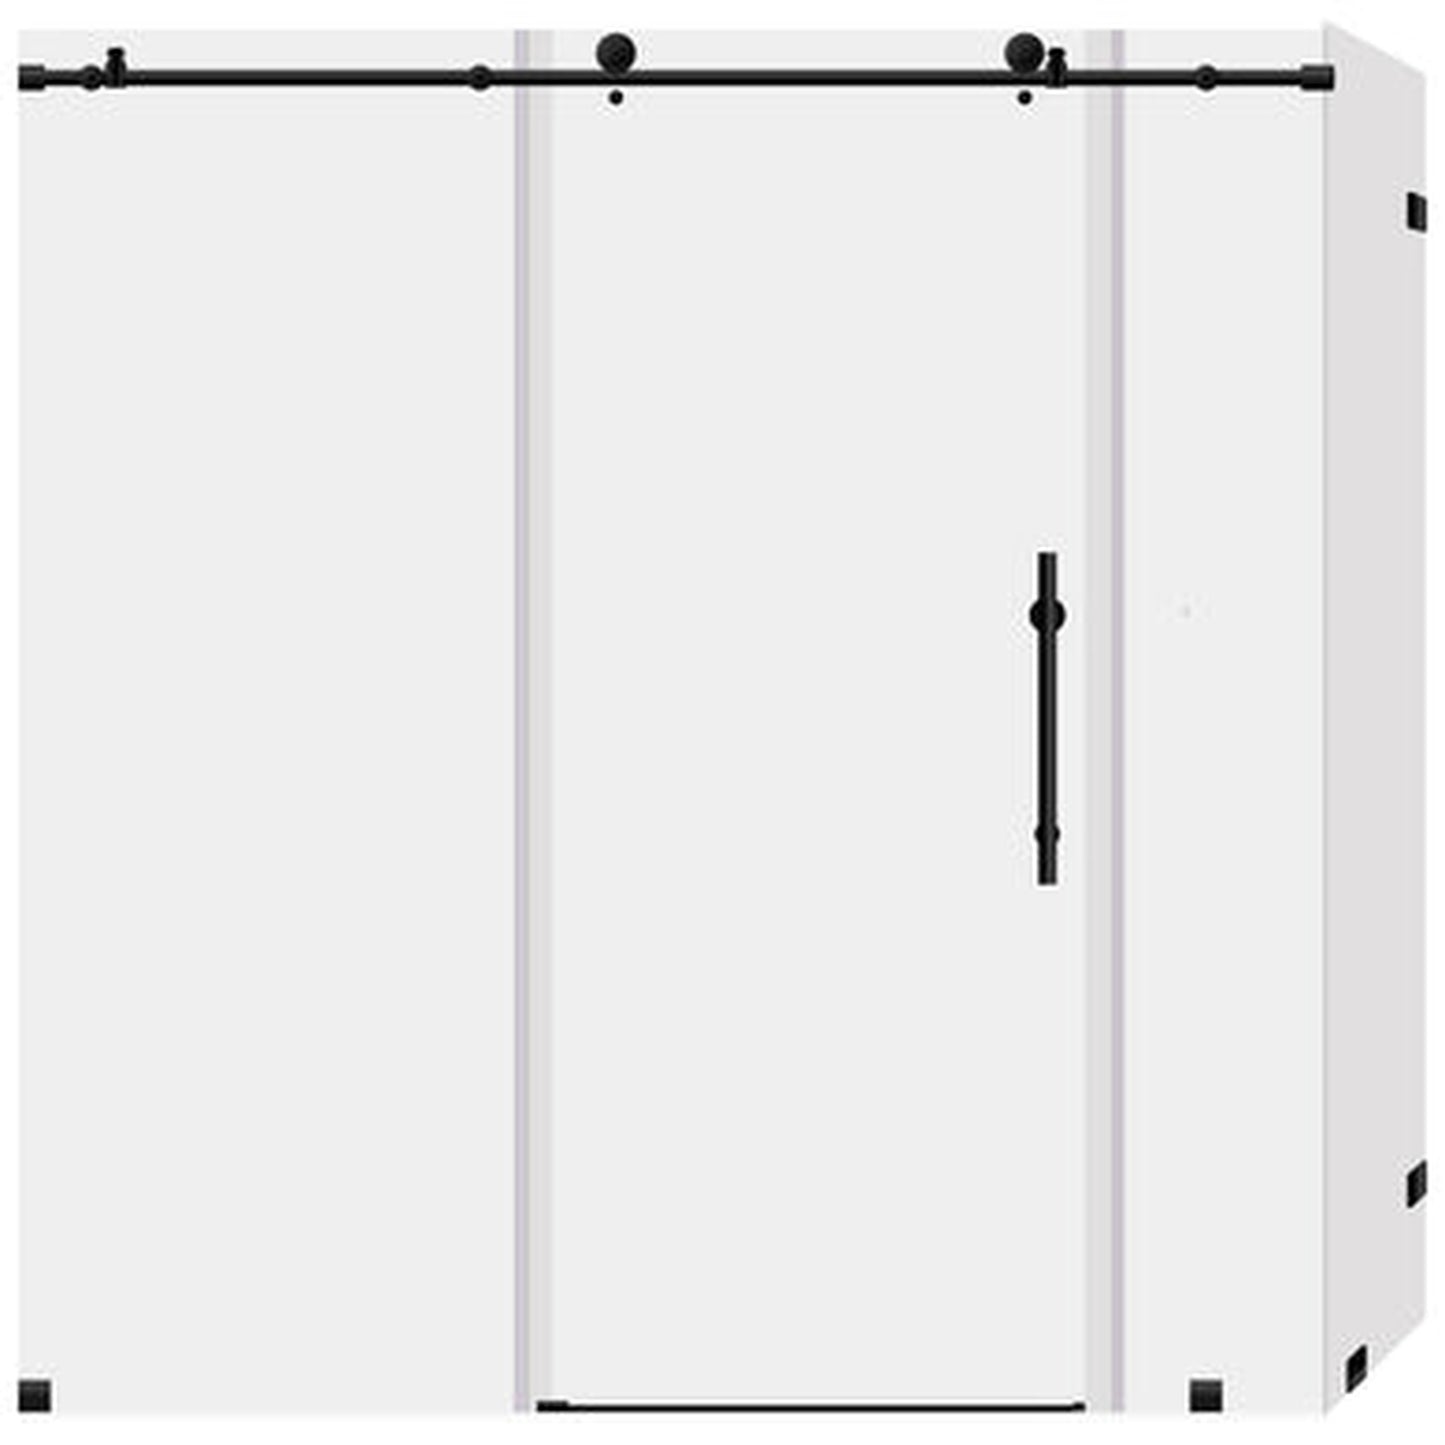 LessCare Ultra-C 68-72" x 76" x 36" Matte Black Sliding Shower Enclosure